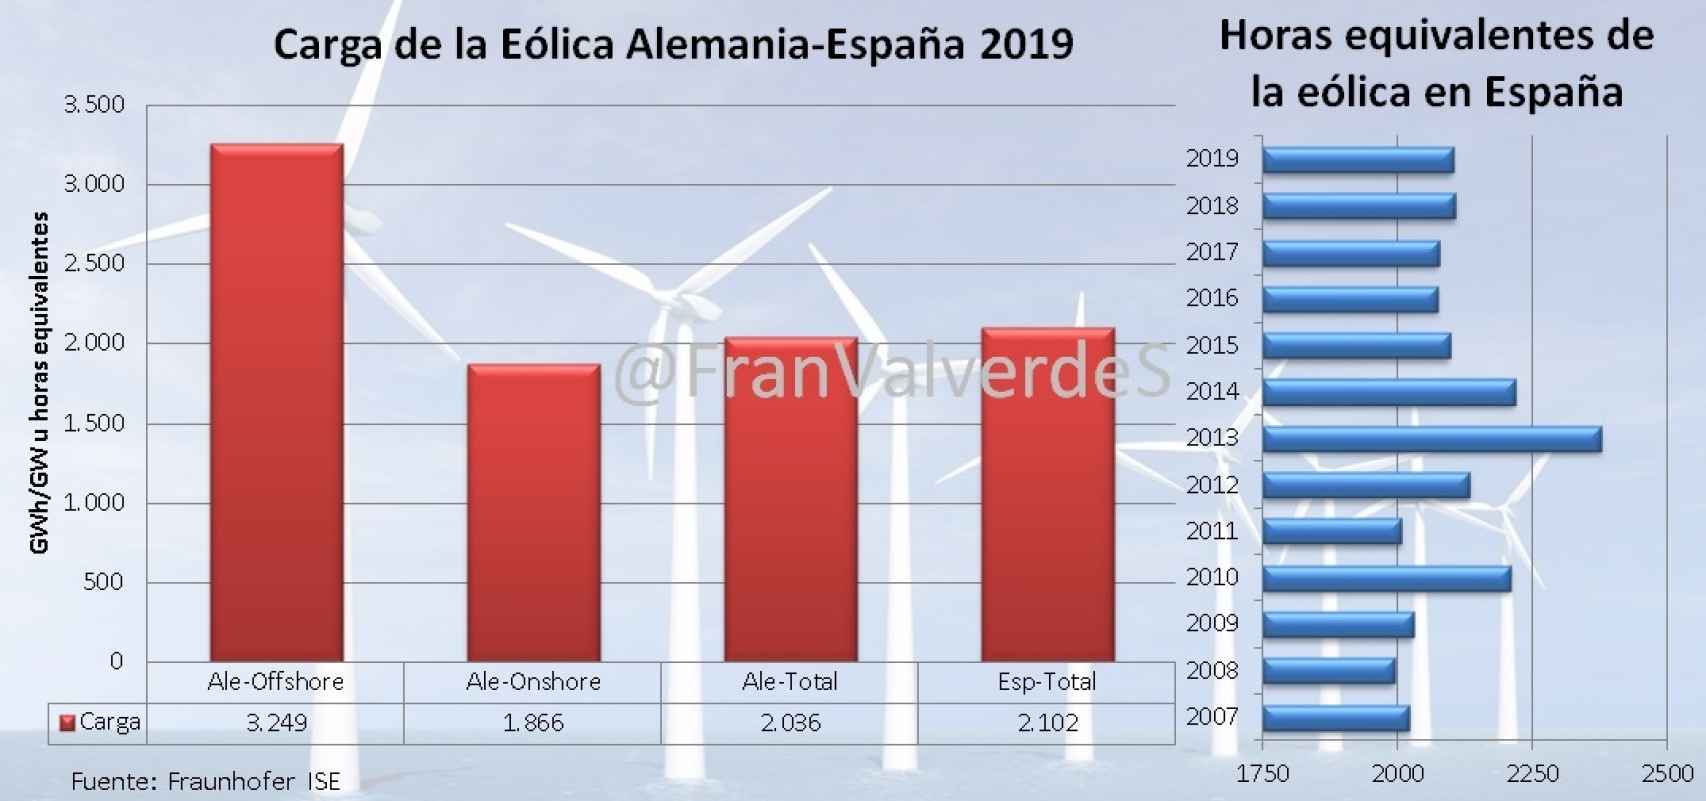 Carga eólica comparativa entre Alemania y España